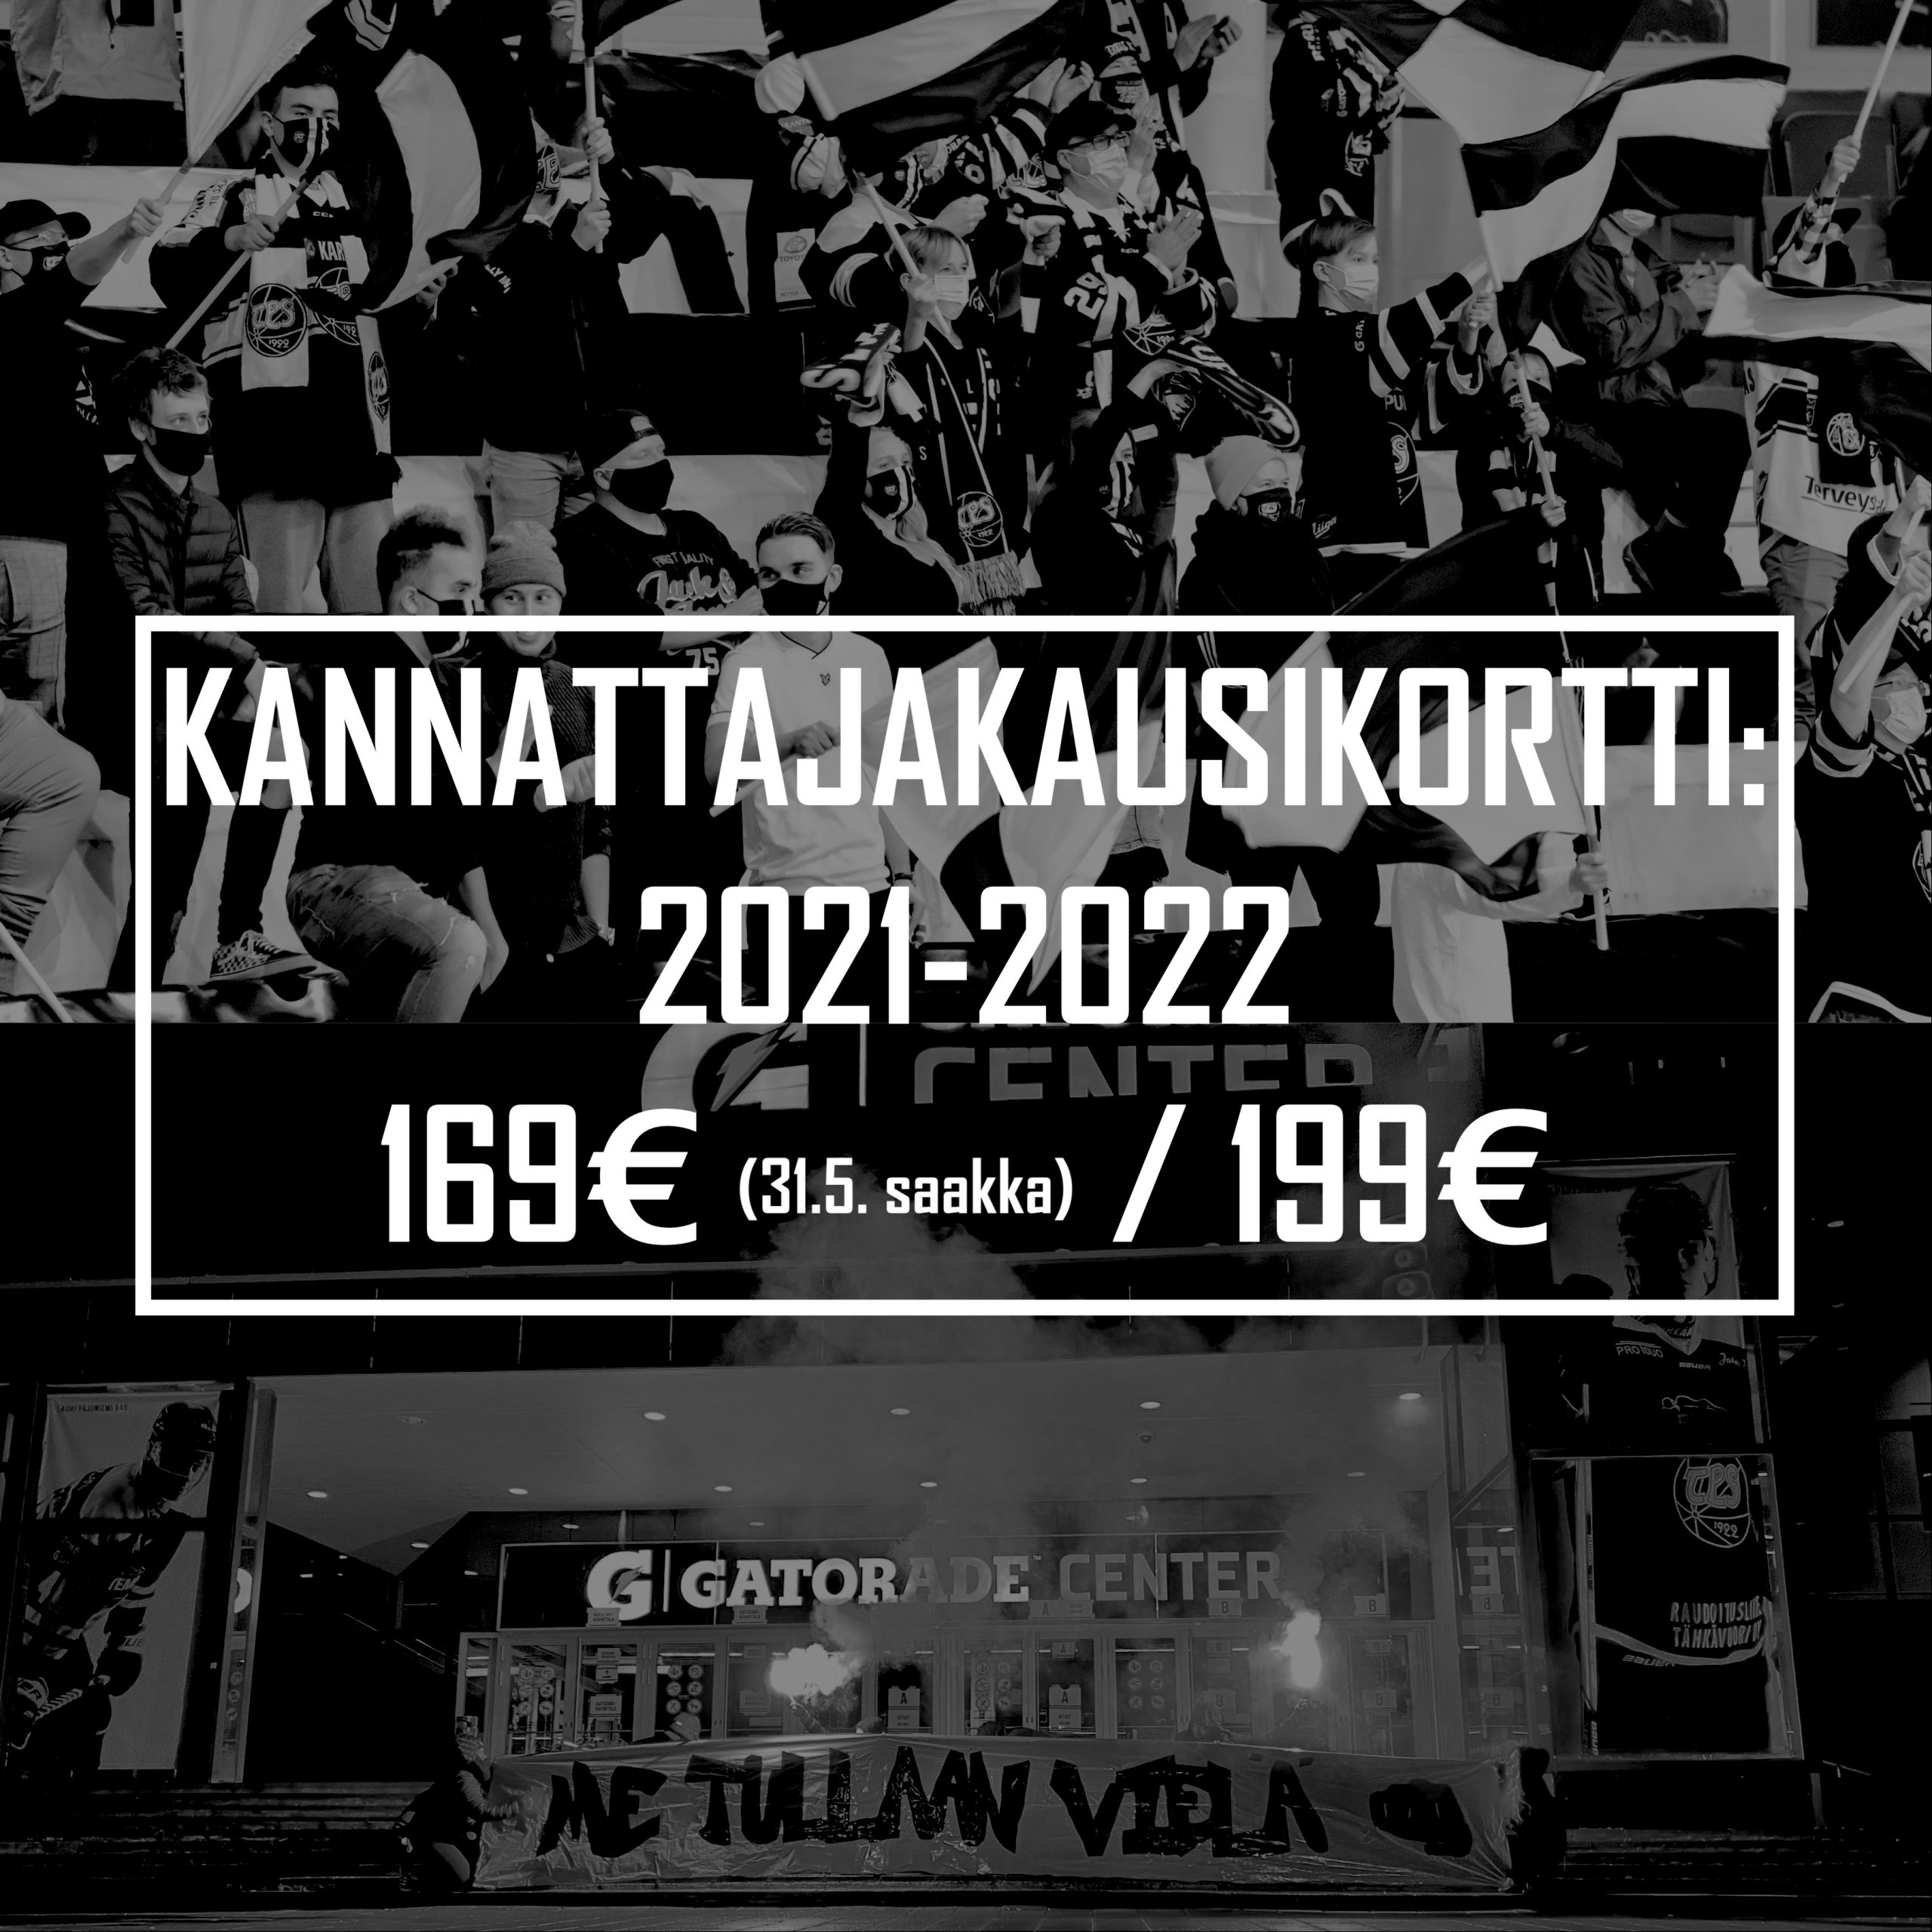 Jääkiekon kannattajakausikortti 2021-2022